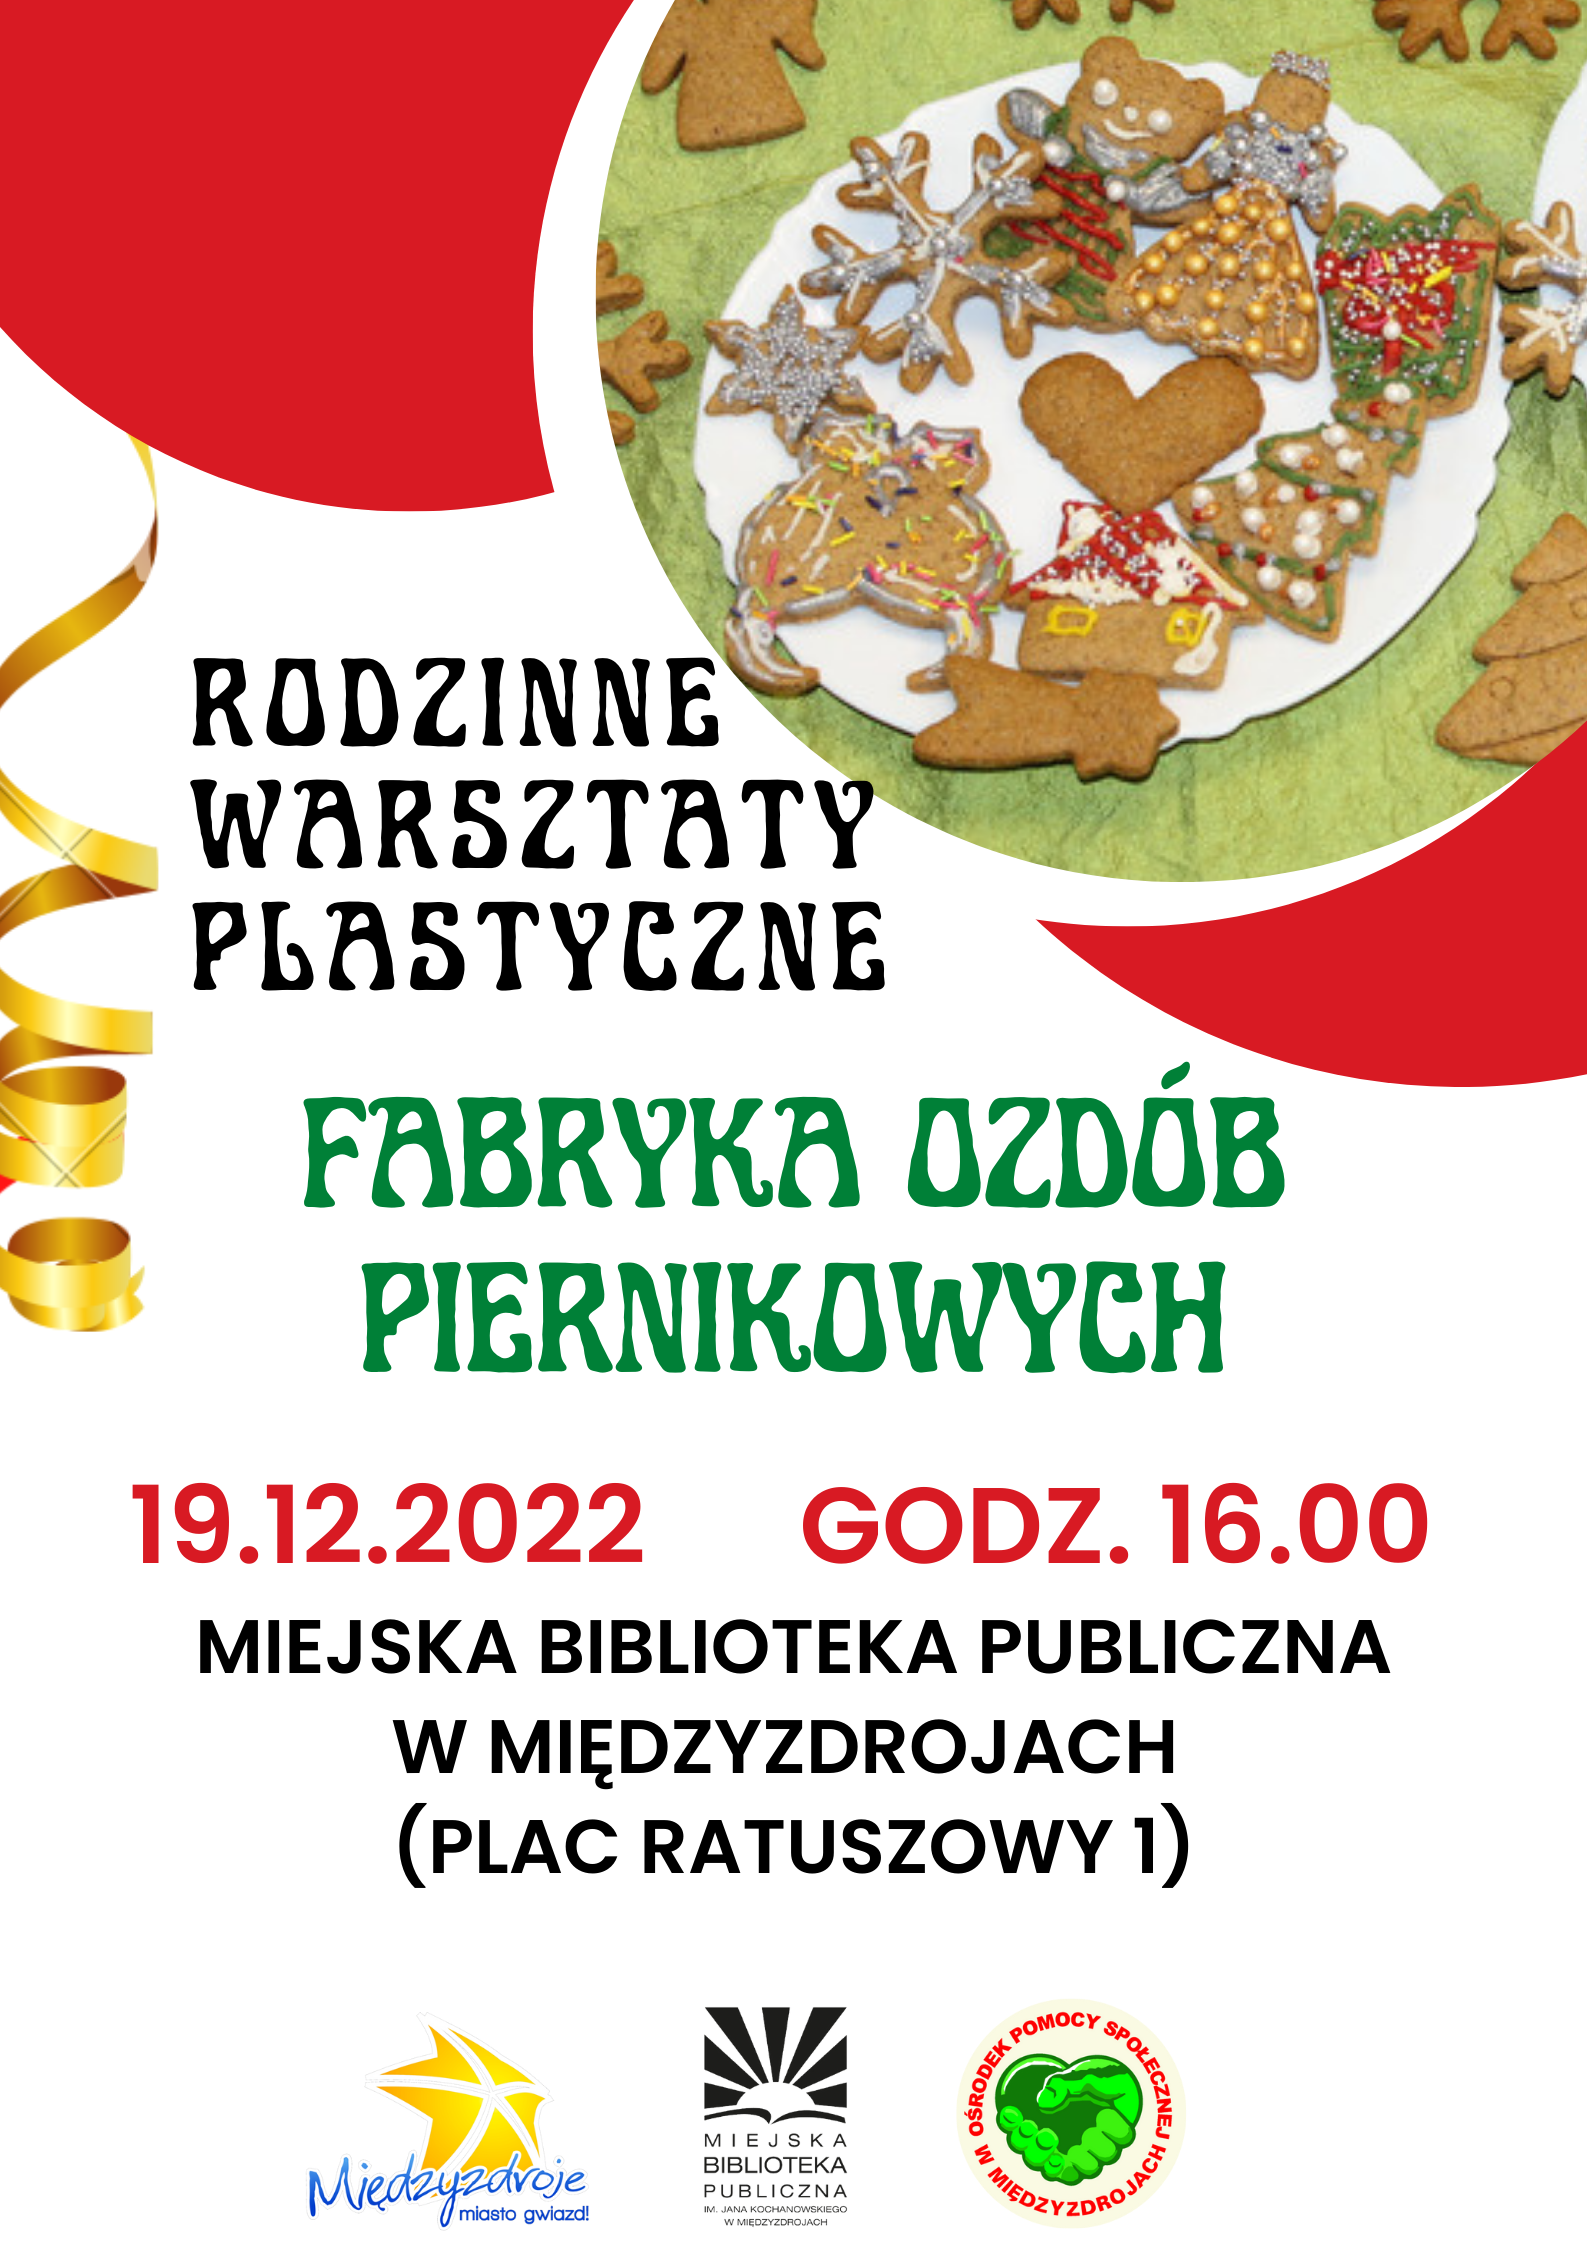 Rodzinne warsztaty plastyczne pt. ”Fabryka ozdób piernikowych” - 19 grudnia 2022 r. 